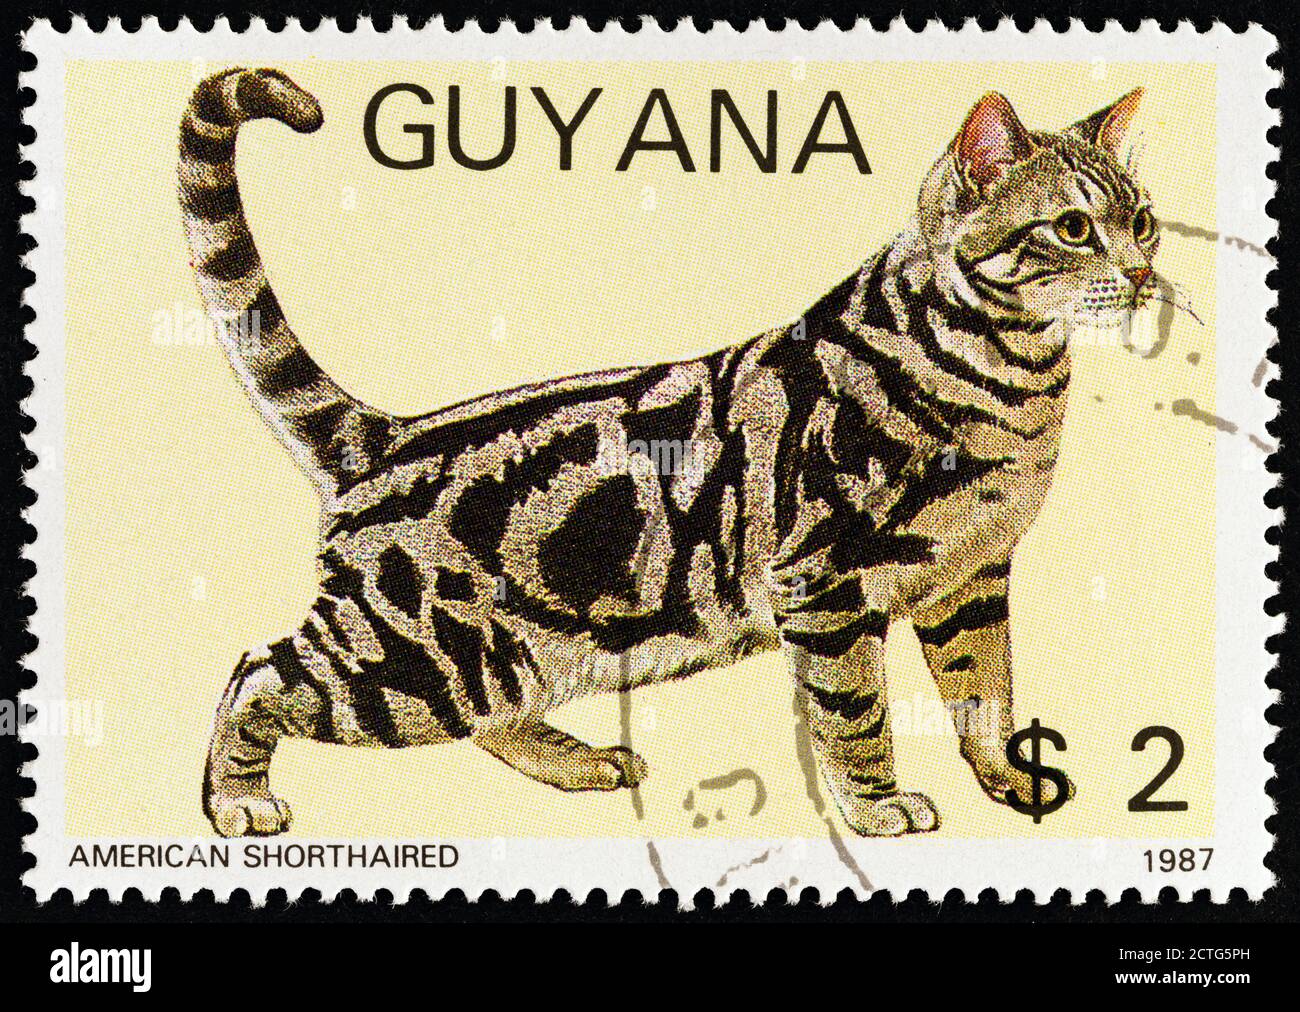 GUYANA - UM 1988: Eine in Guyana gedruckte Briefmarke aus der 'Cats'-Ausgabe zeigt American Shorthaired, um 1988. Stockfoto